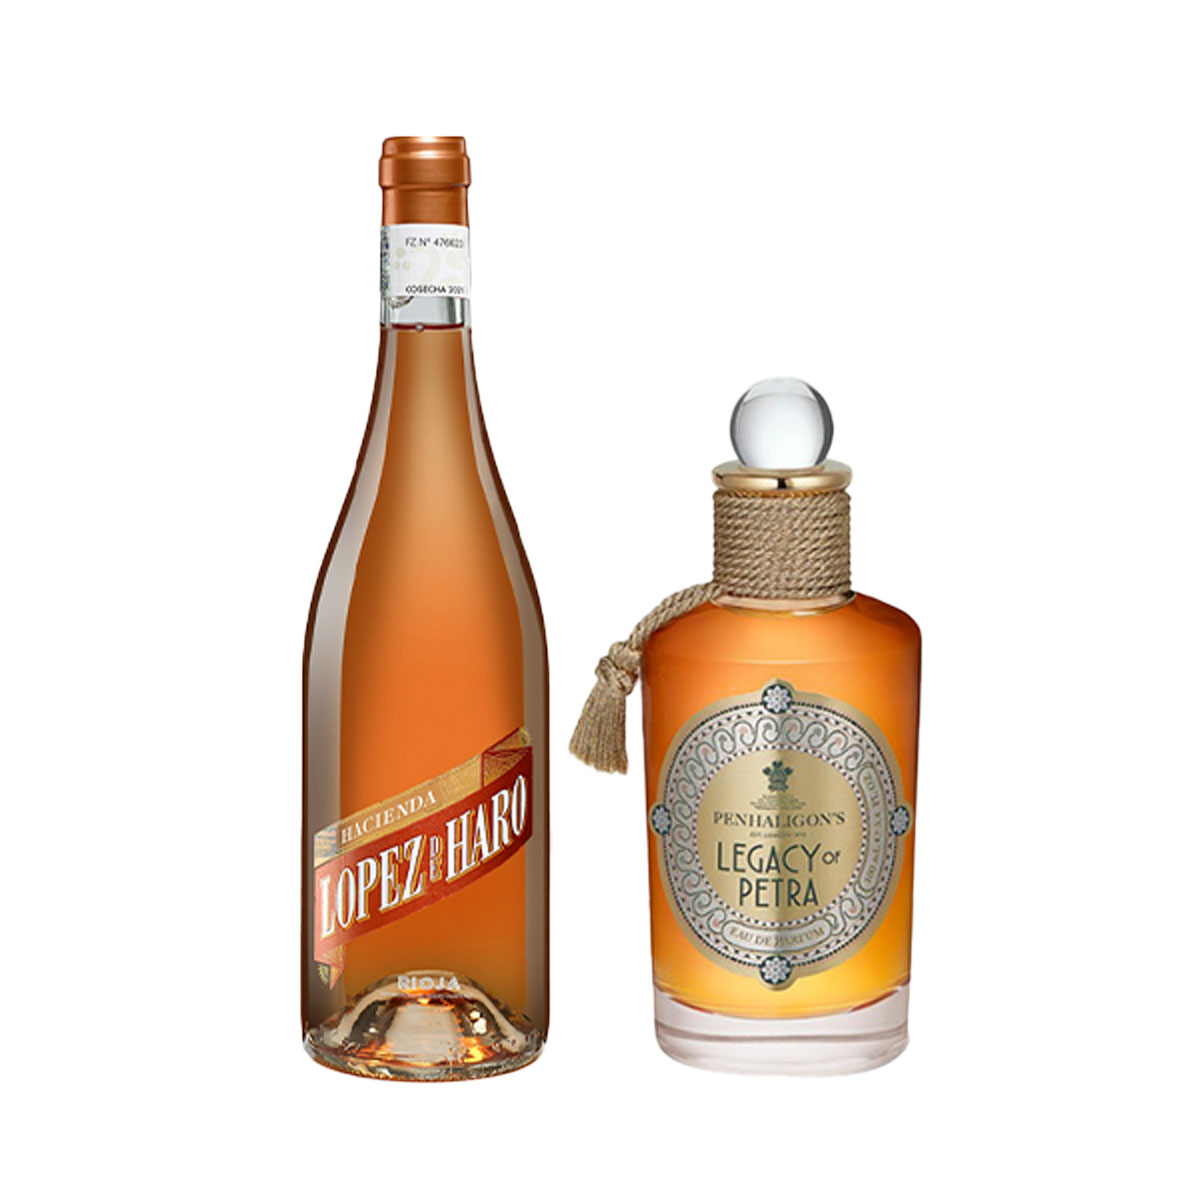 Flasche und Parfum mit orangenem Inhalt